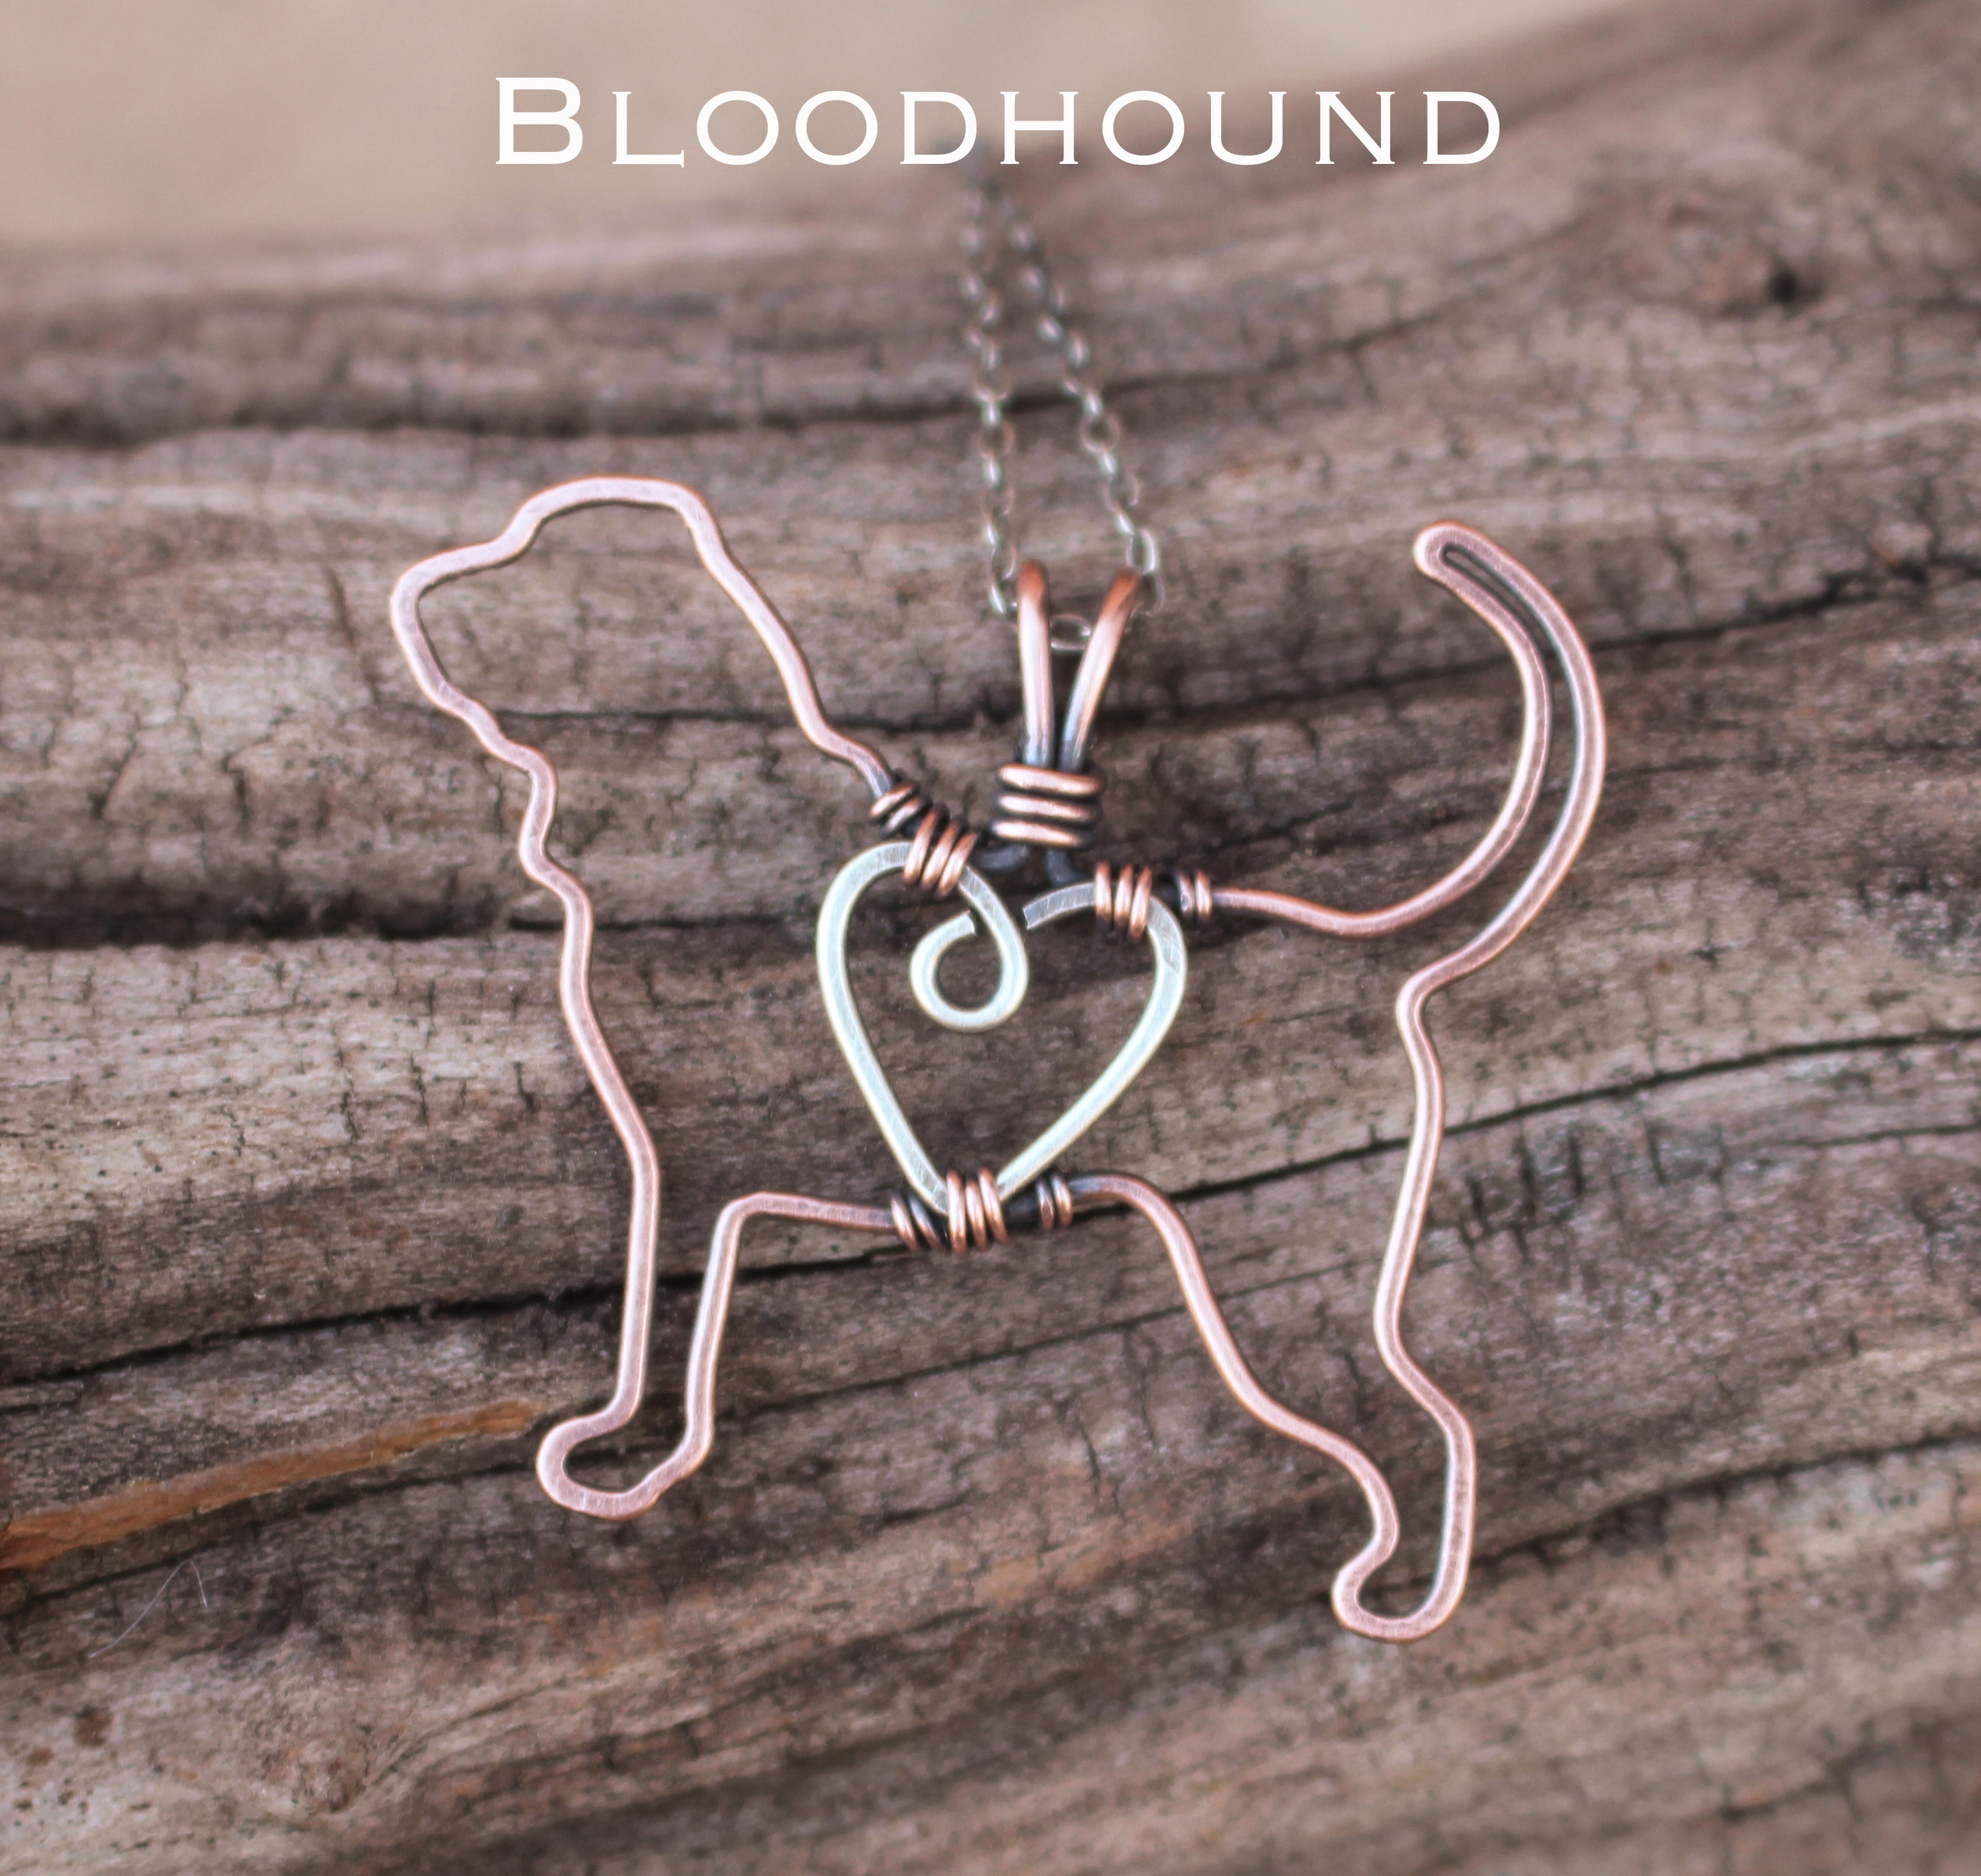 bloodhound1.jpg